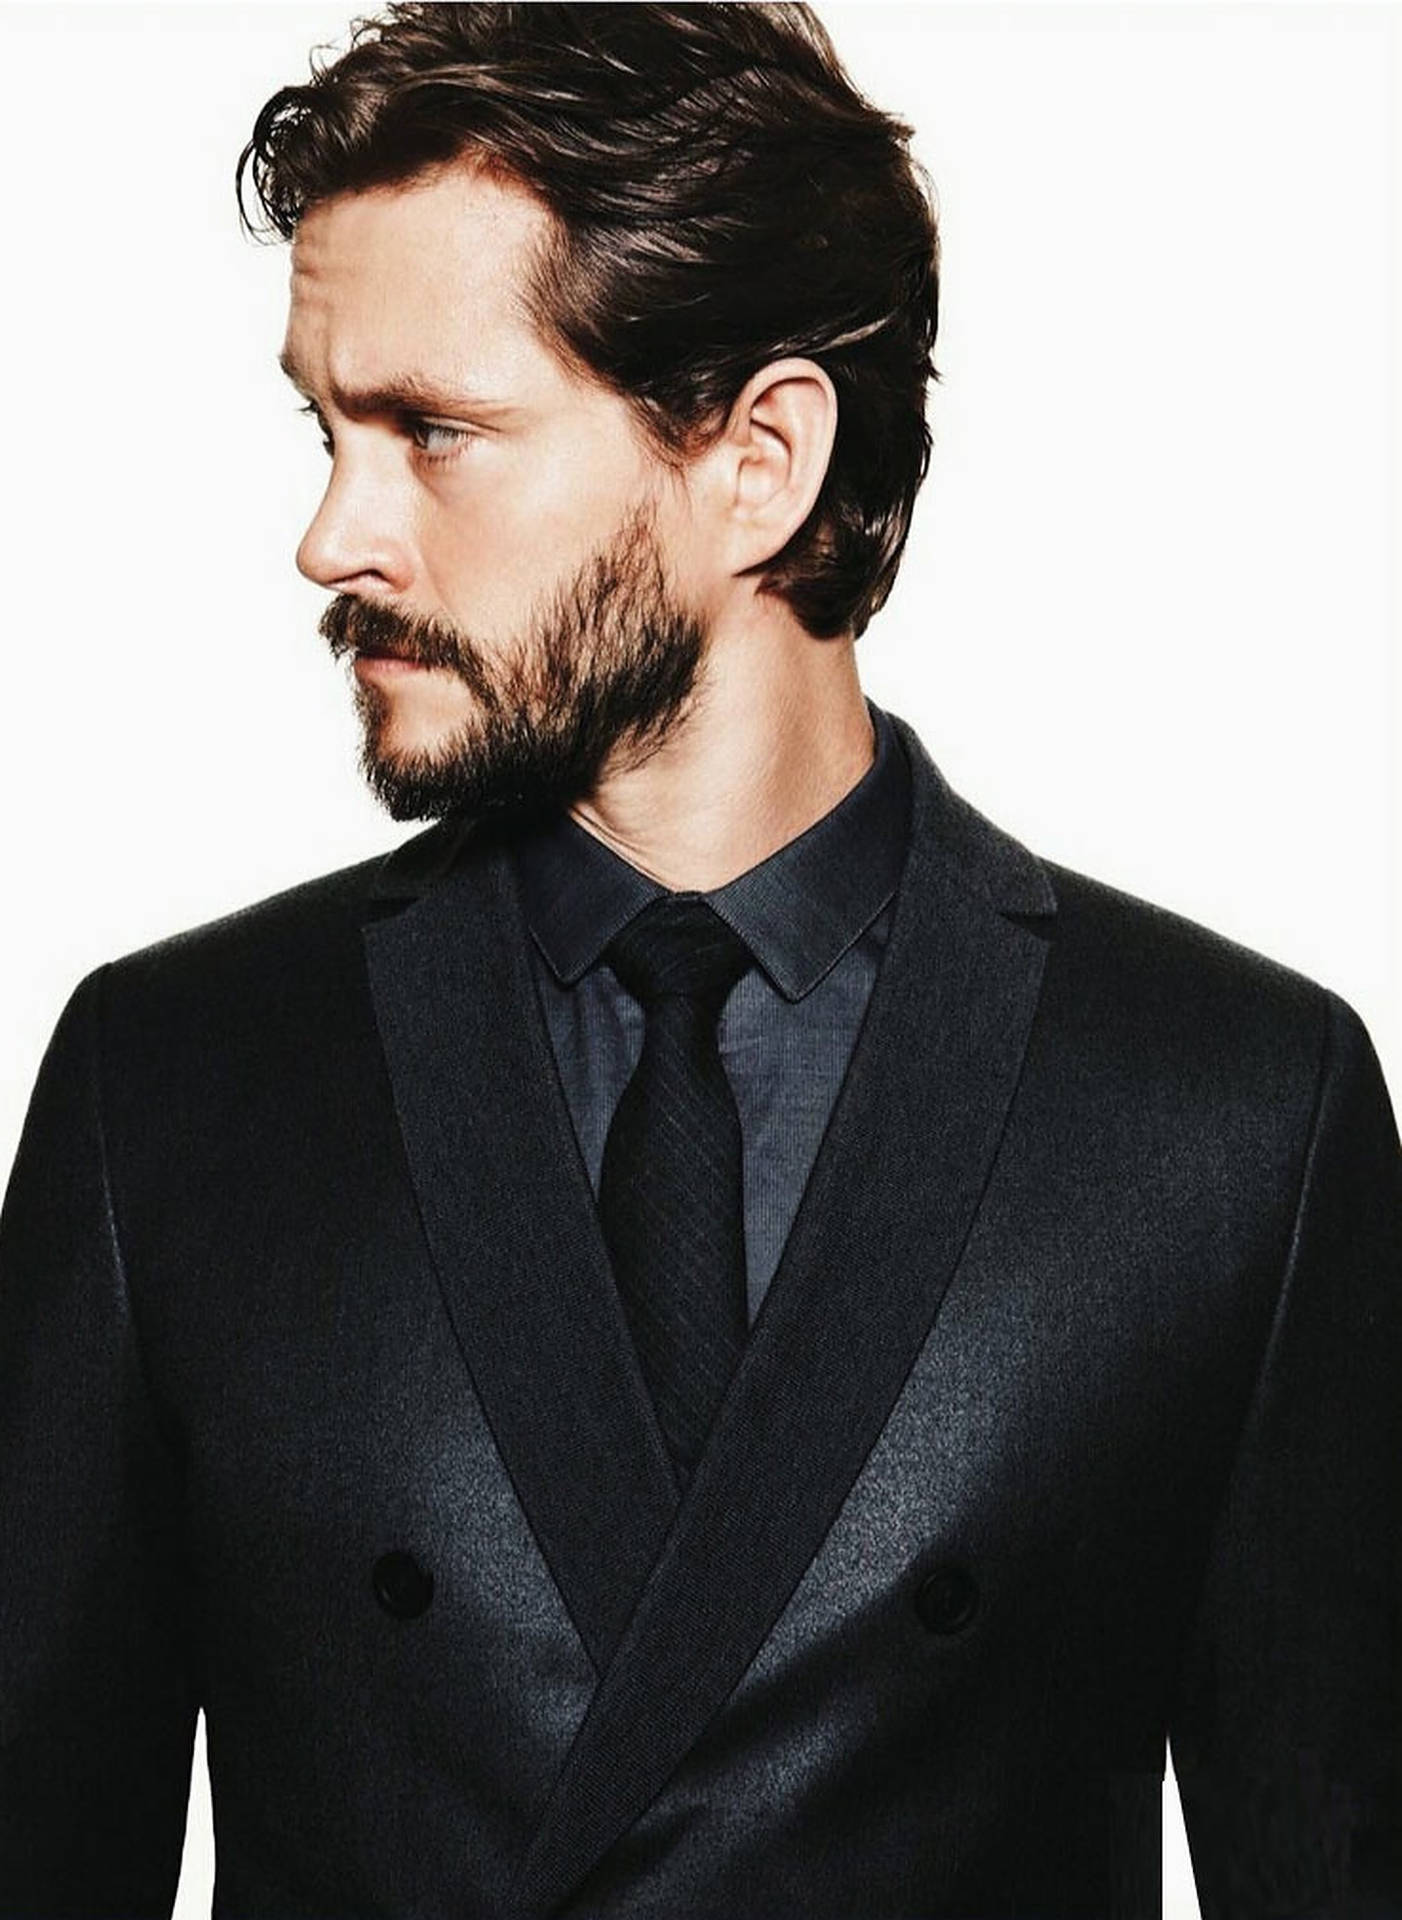 Hugh Dancy In Black Suit Background